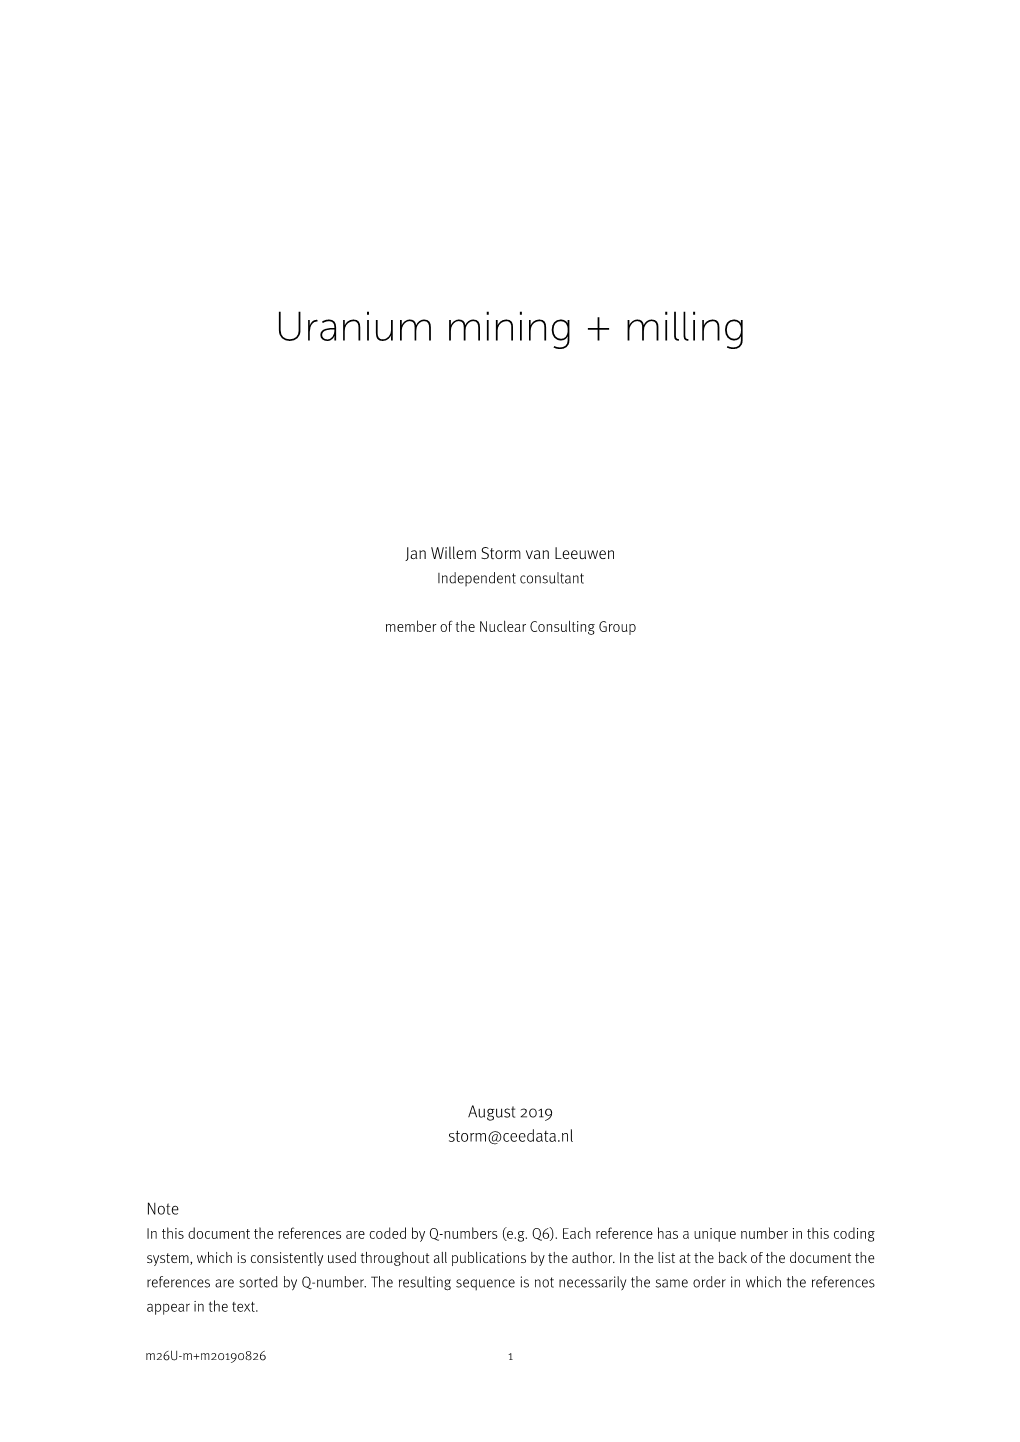 Uranium Mining + Milling